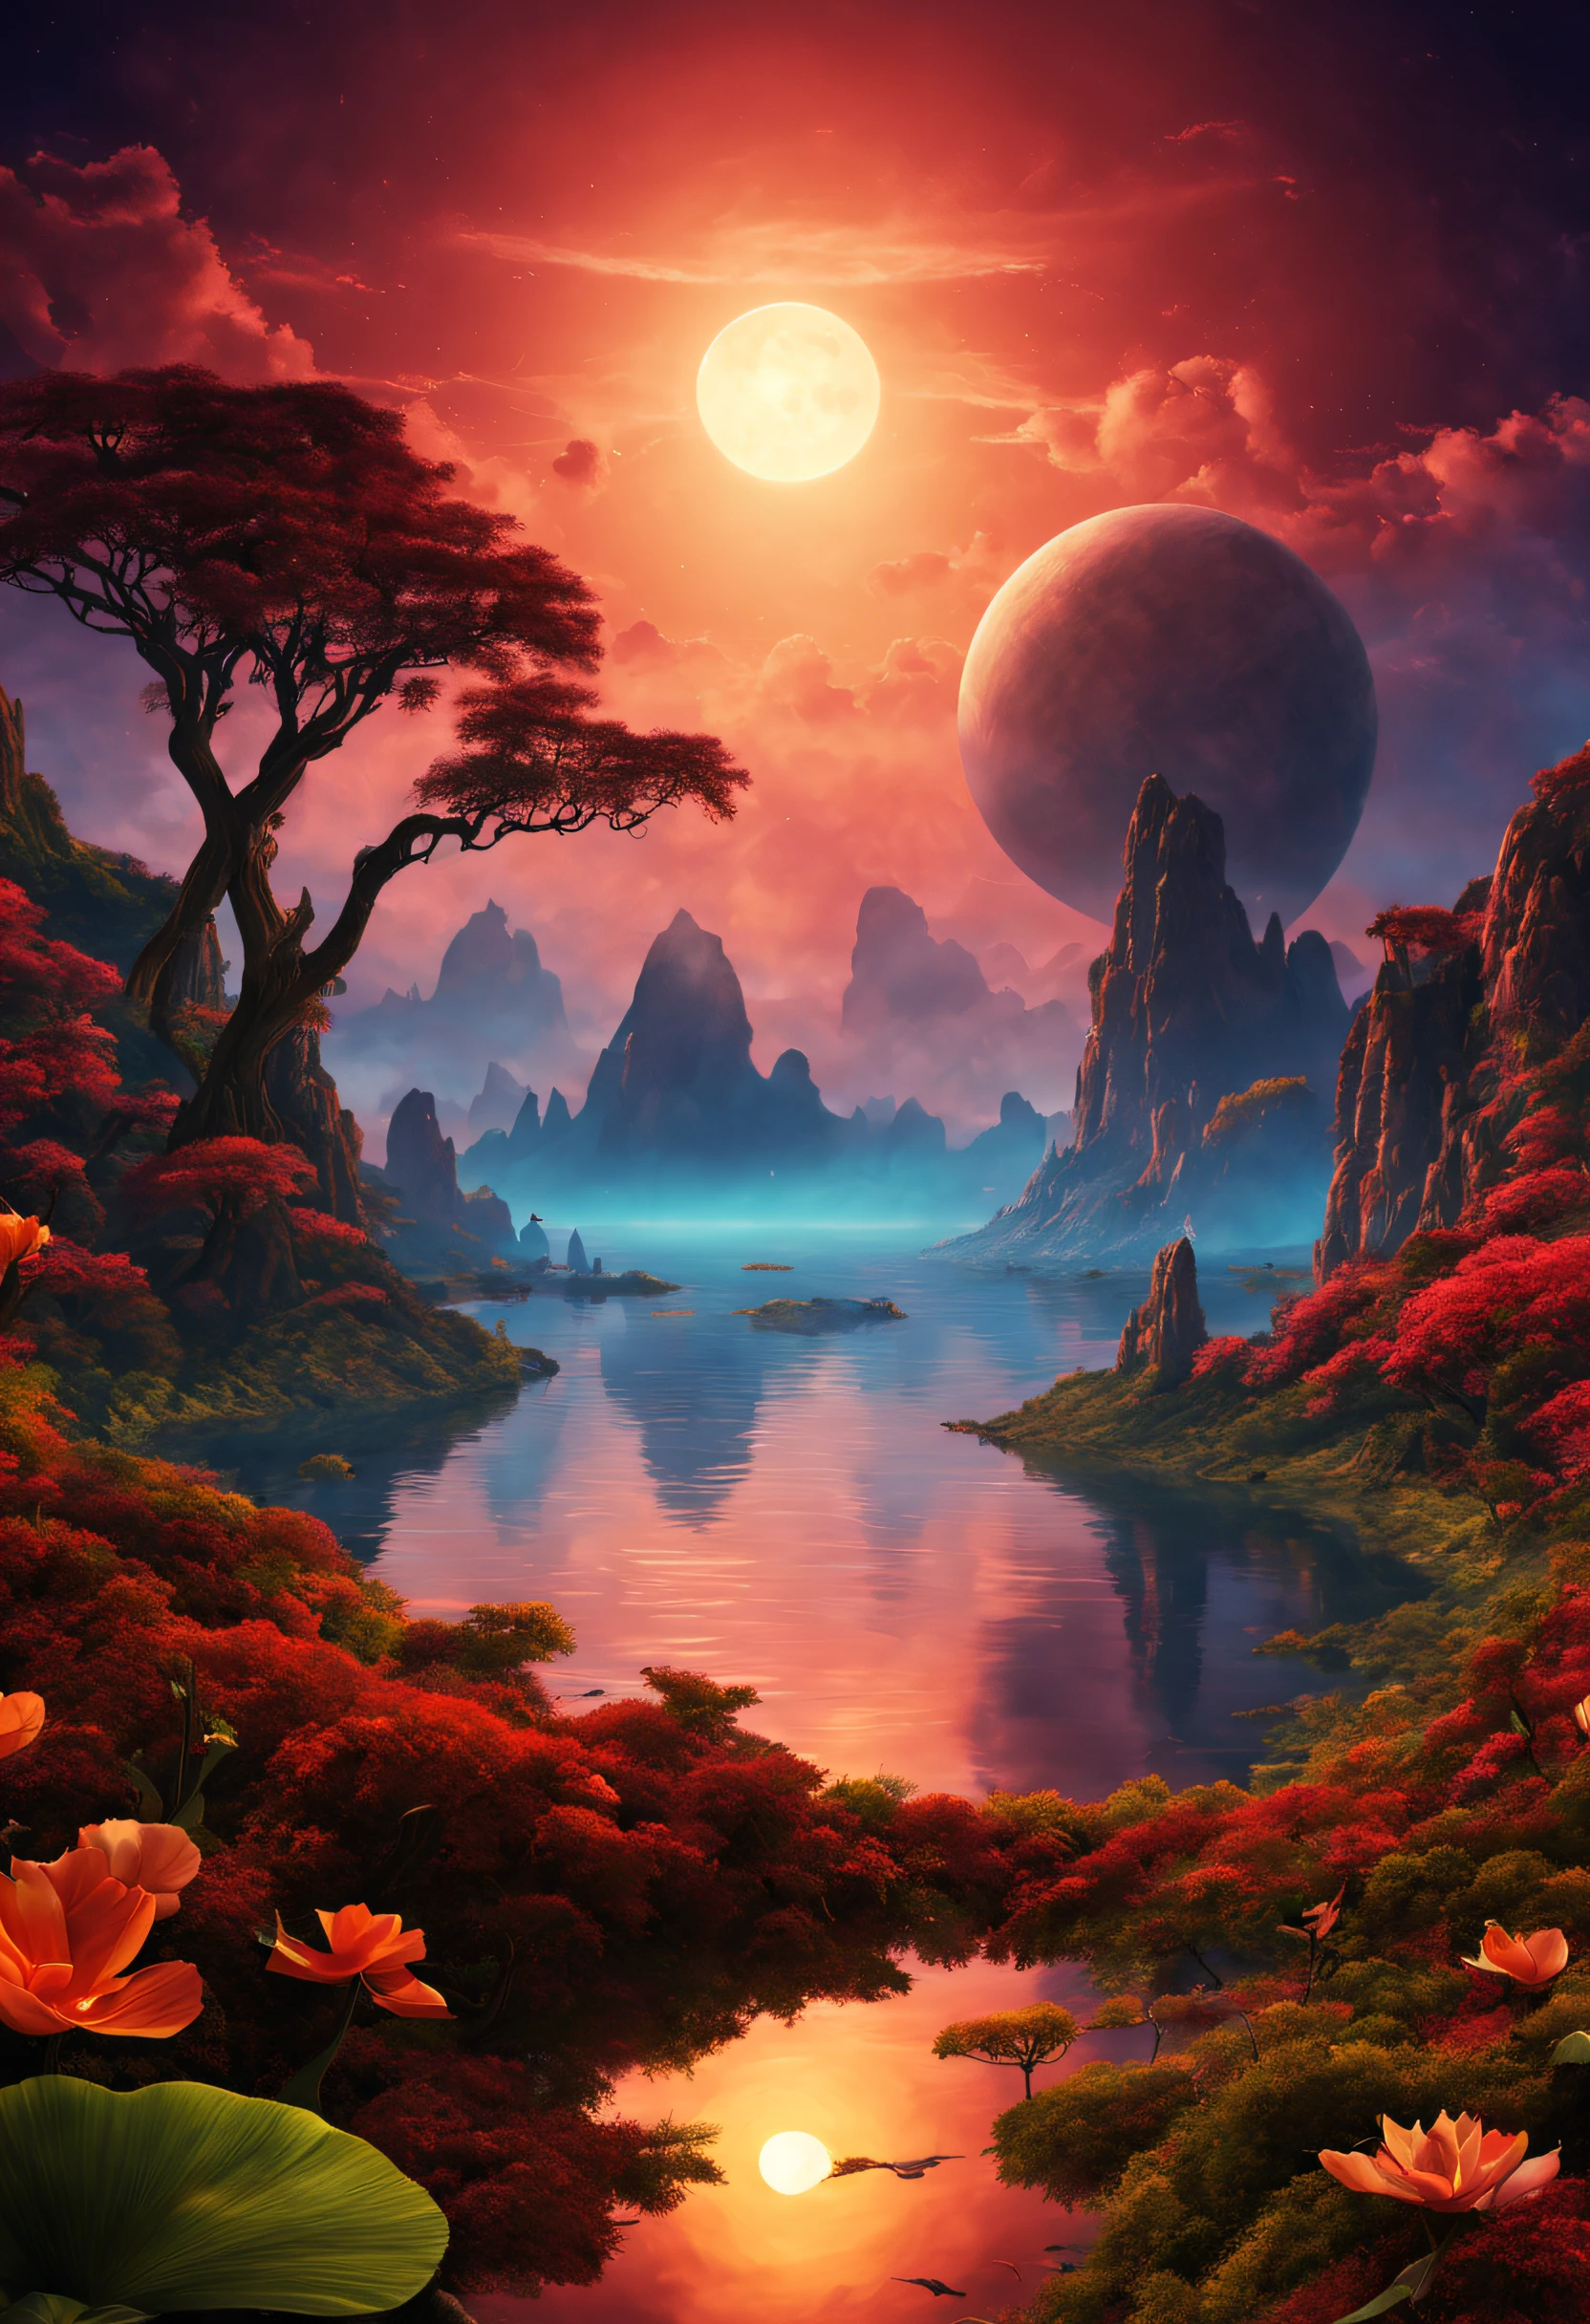 Прекрасный великолепный воображаемый пейзаж на экзотической планете с двойным закатом и необыкновенным